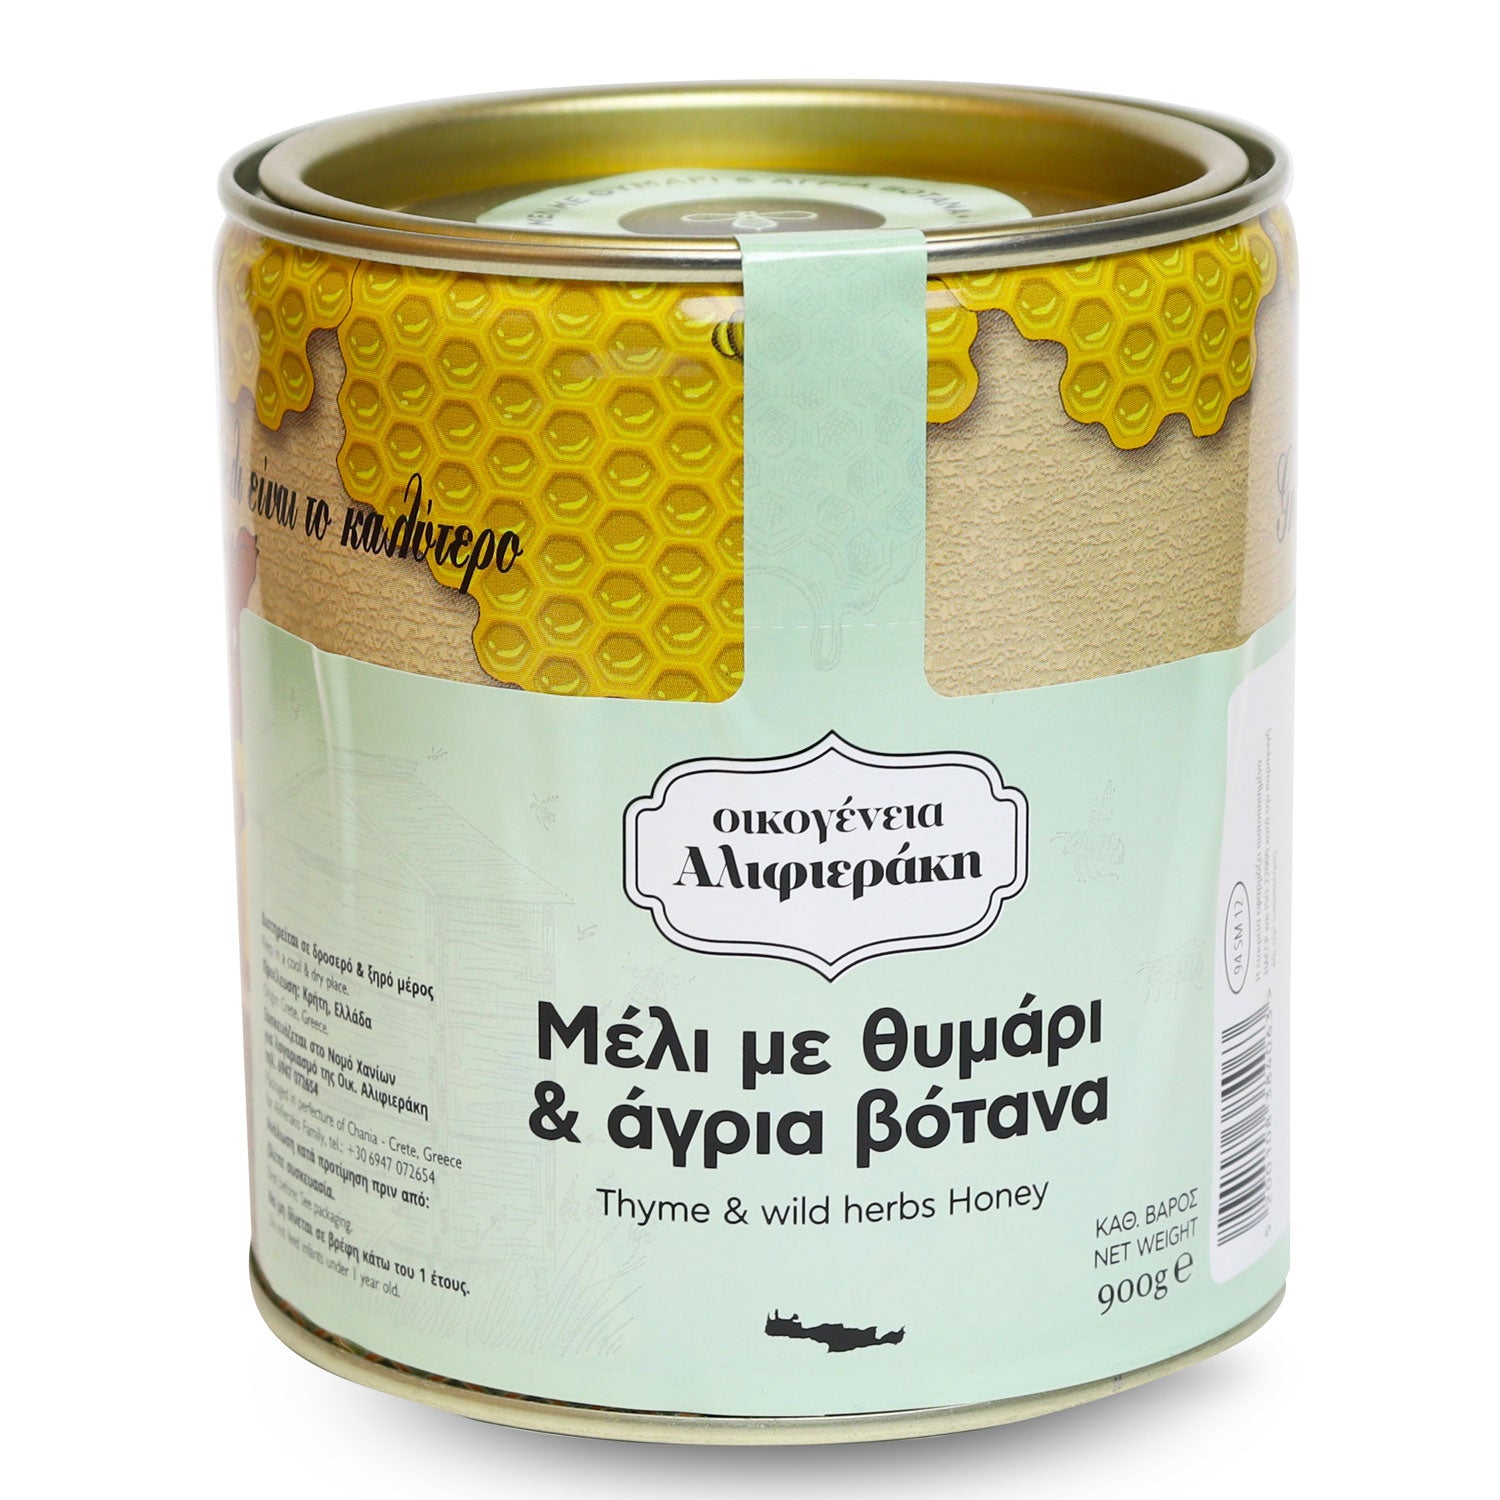 griechische-lebensmittel-griechische-produkte-kretischer-thymian-und-wildblumenhonig-900g